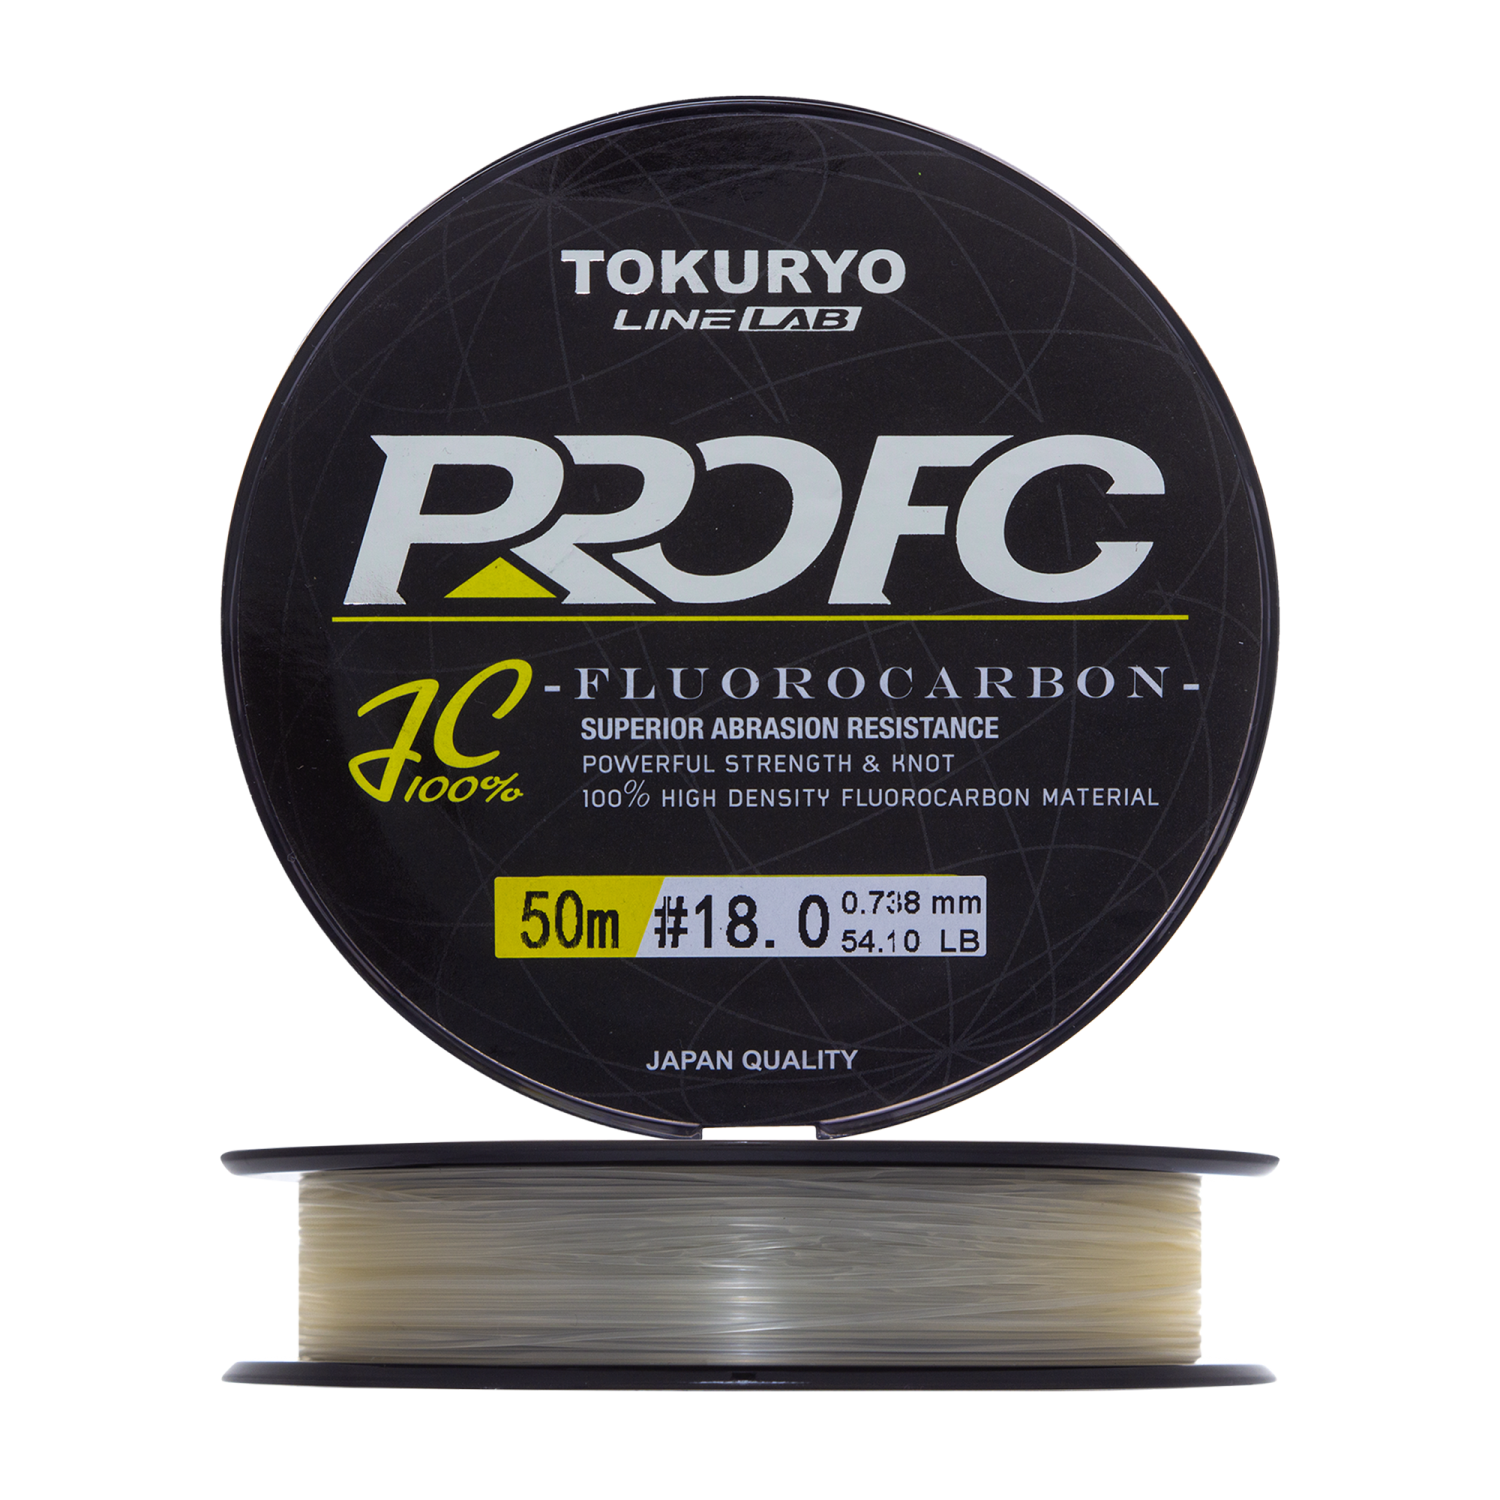 Флюорокарбон Tokuryo Fluorocarbon Pro FC #18 50м (clear)